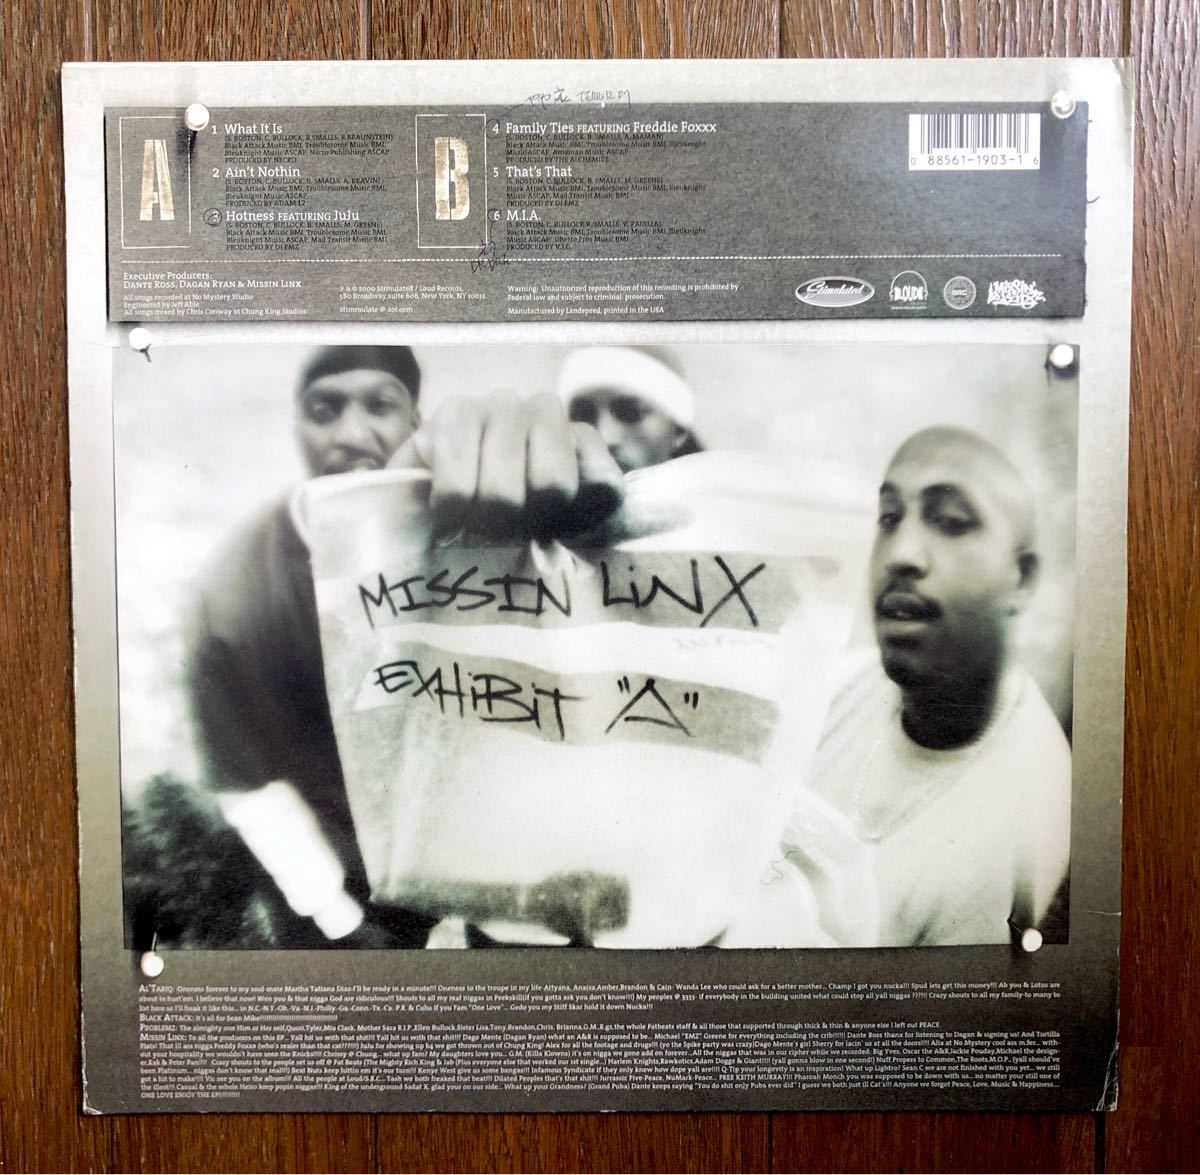 レア 2000 Missin’ Linx / Exhibit A 6曲入り EP Dr Dre 同オケ 激レア 音源 MIA 収録 Beatnuts Freddie Foxxx Al’ Tariq Black Attack_画像5